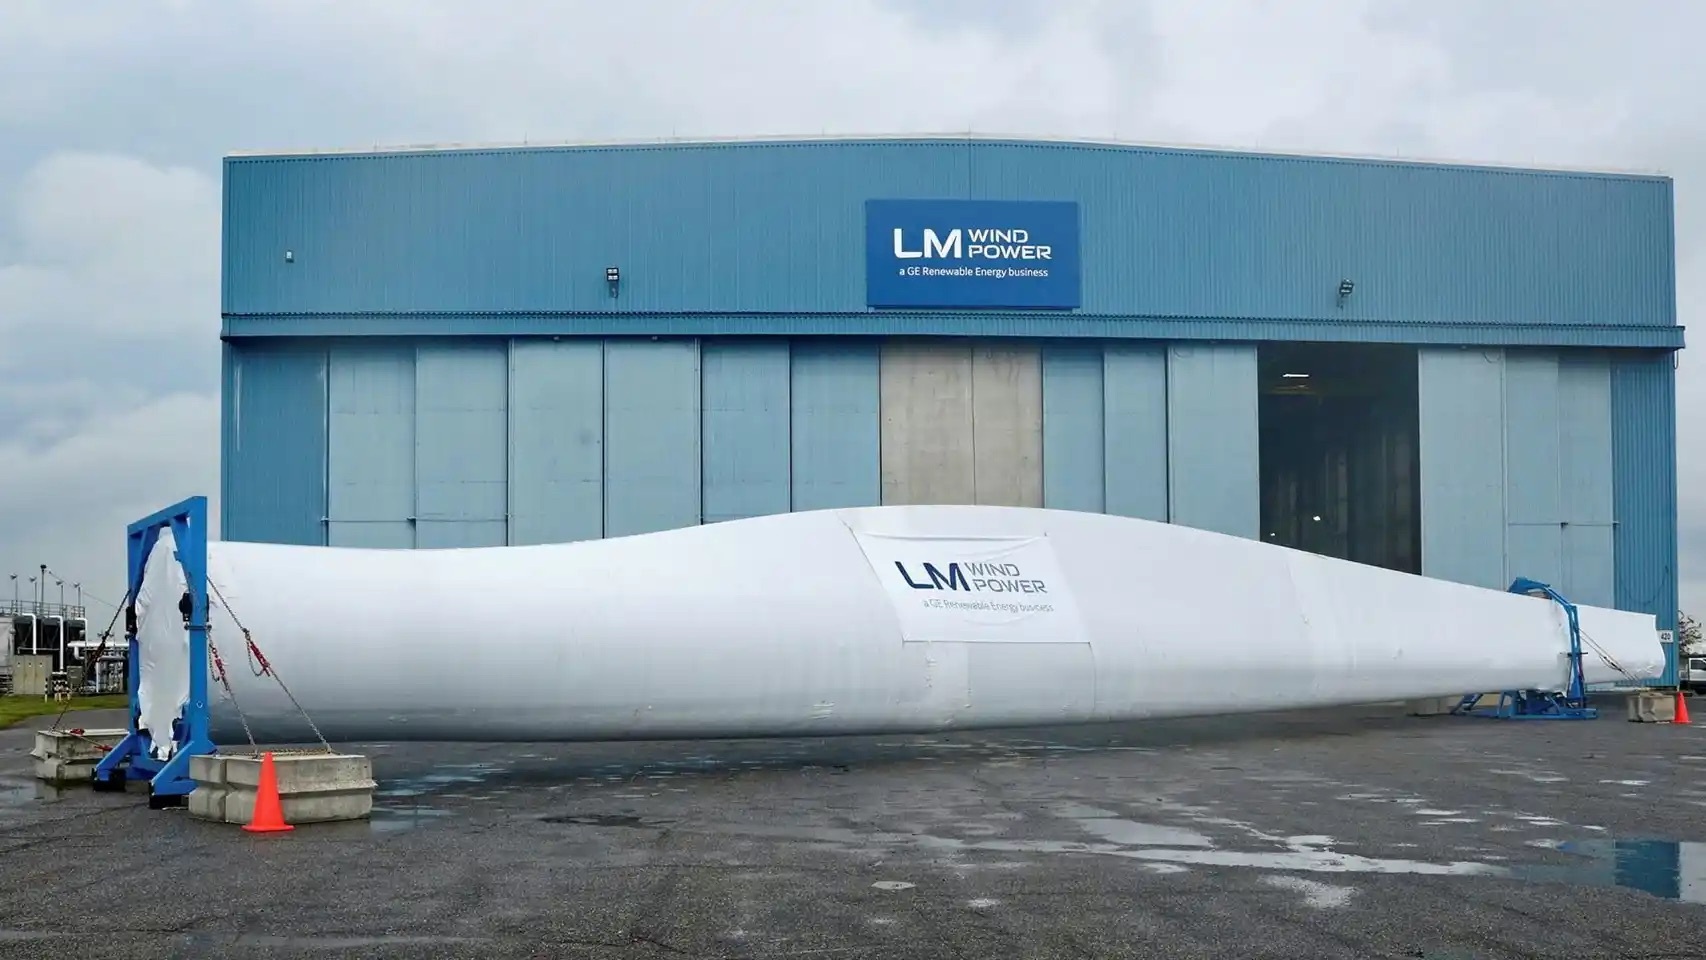 La fábrica eólica de LM Wind (GE) en León se salva: reduce los despidos y asegura su futuro